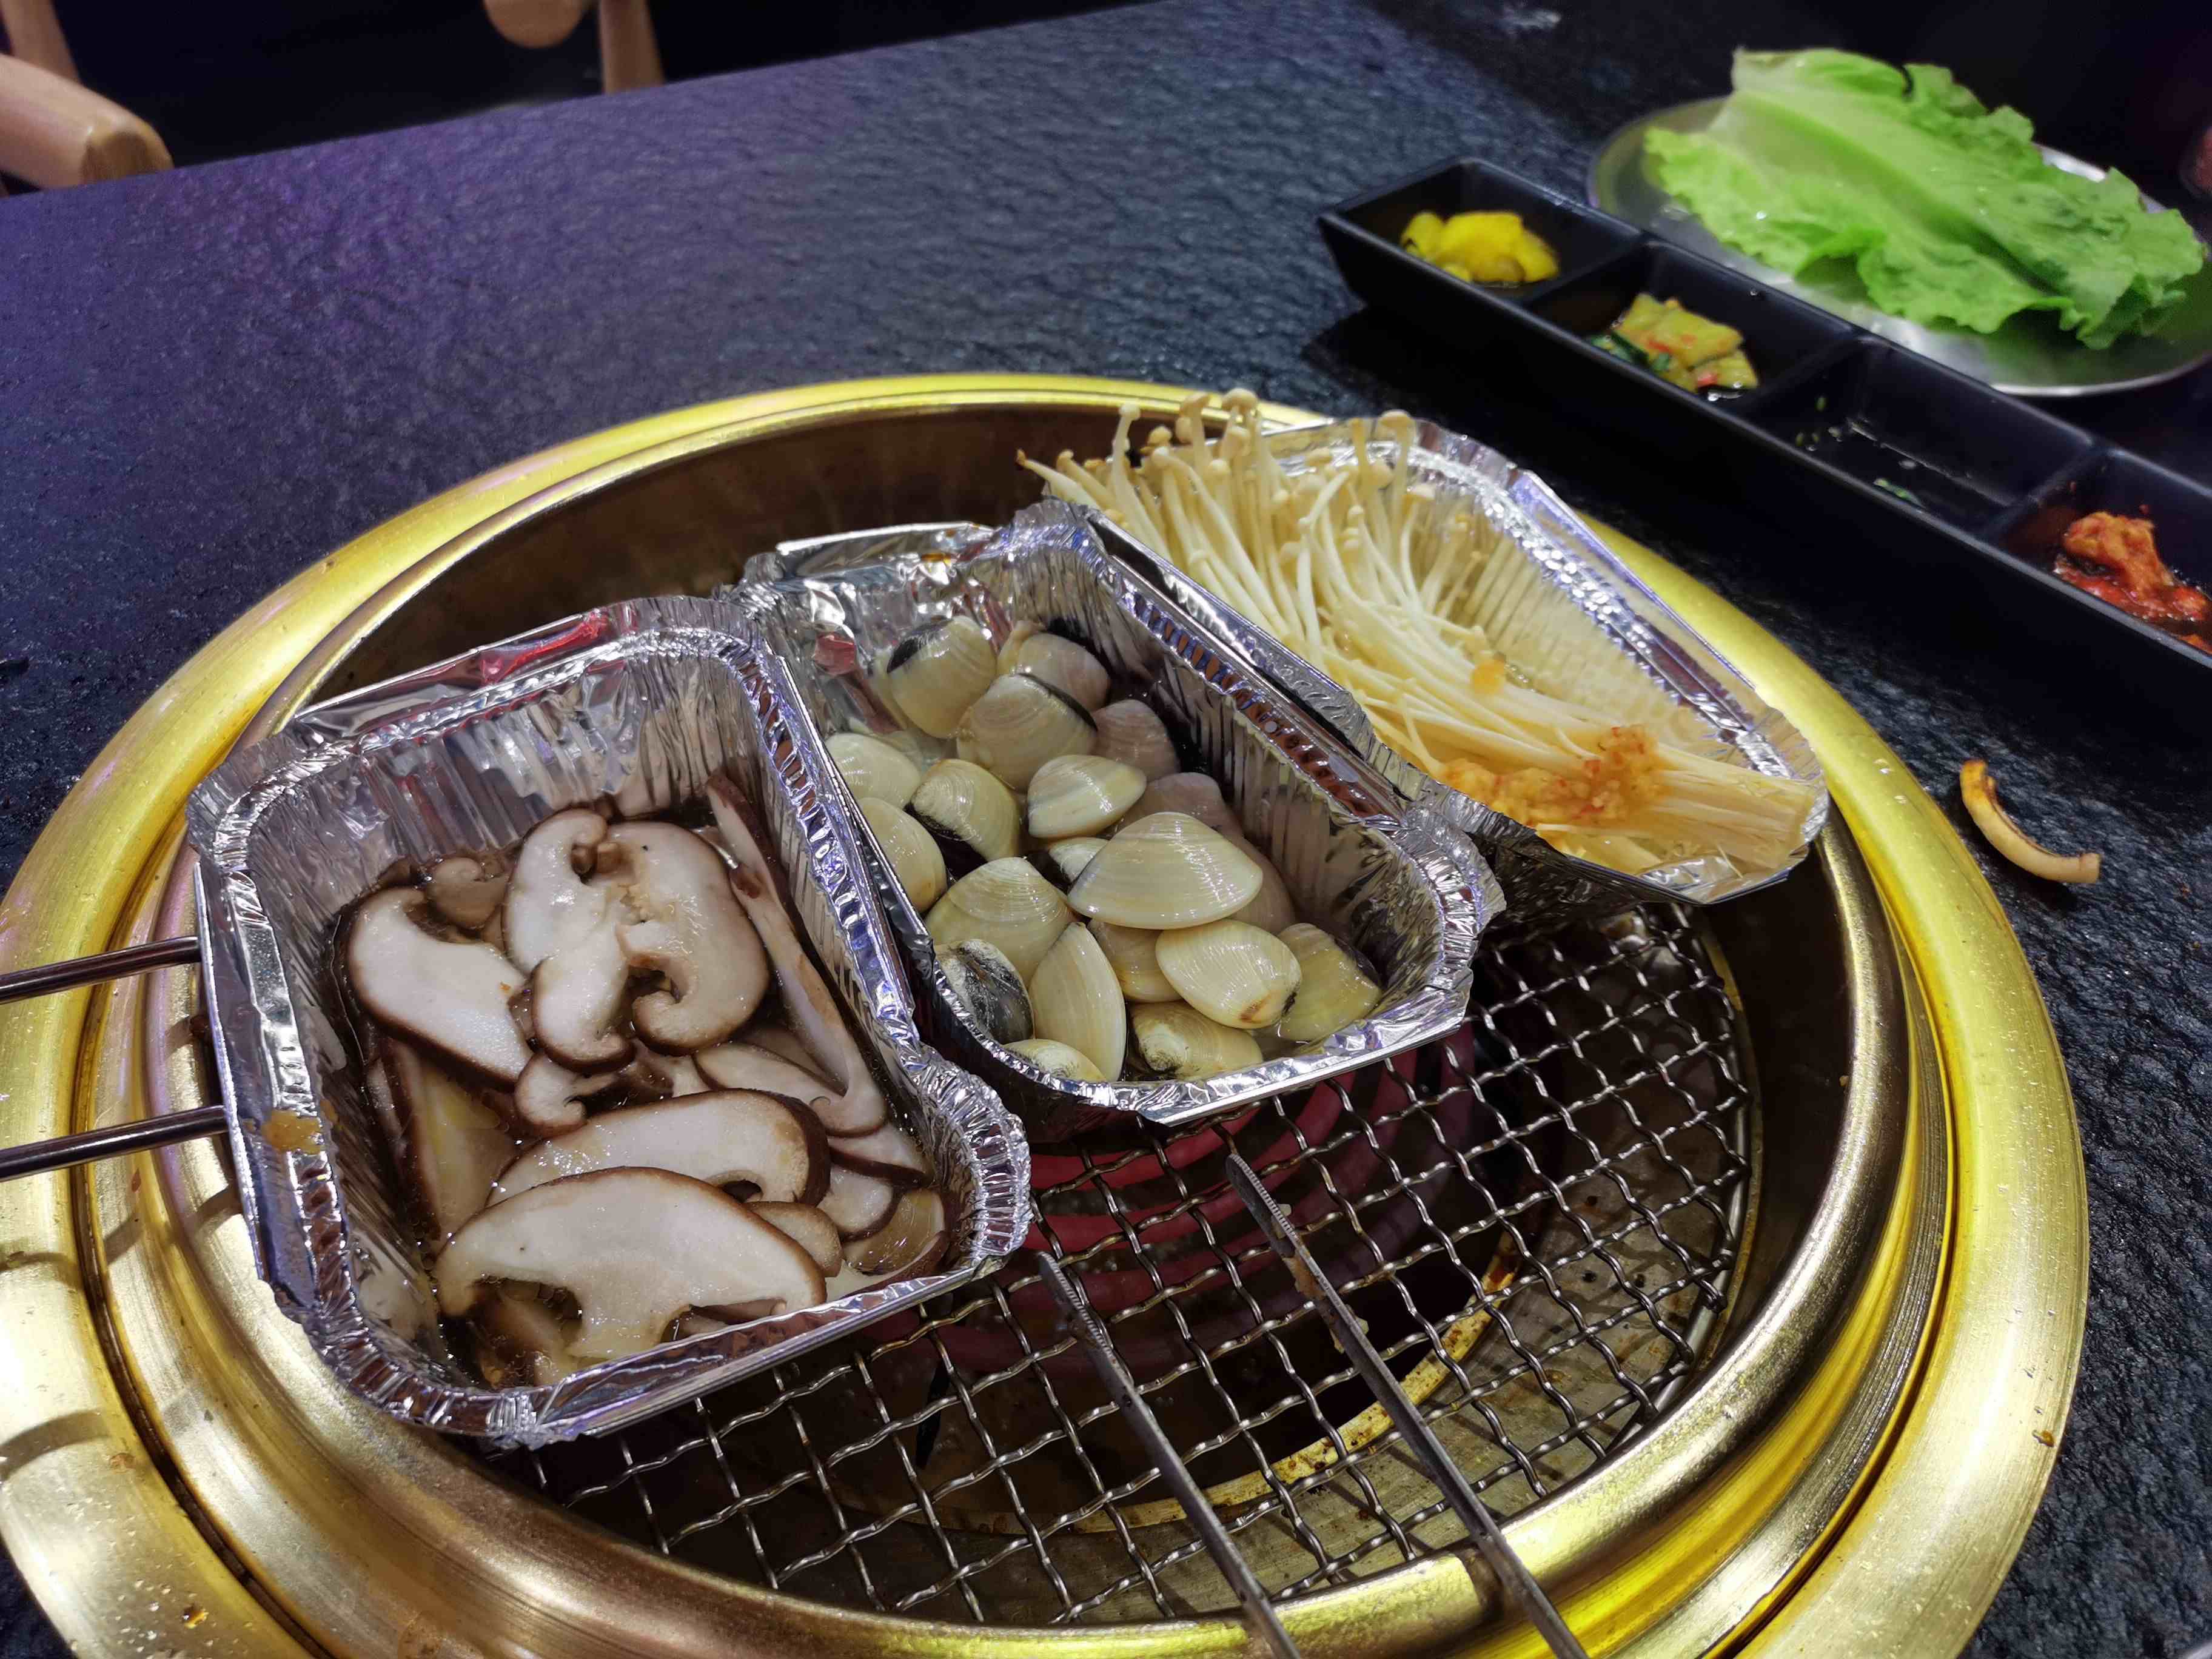 广州这家店的自助烤肉118元一位，吃得比较满意，大家觉得如何